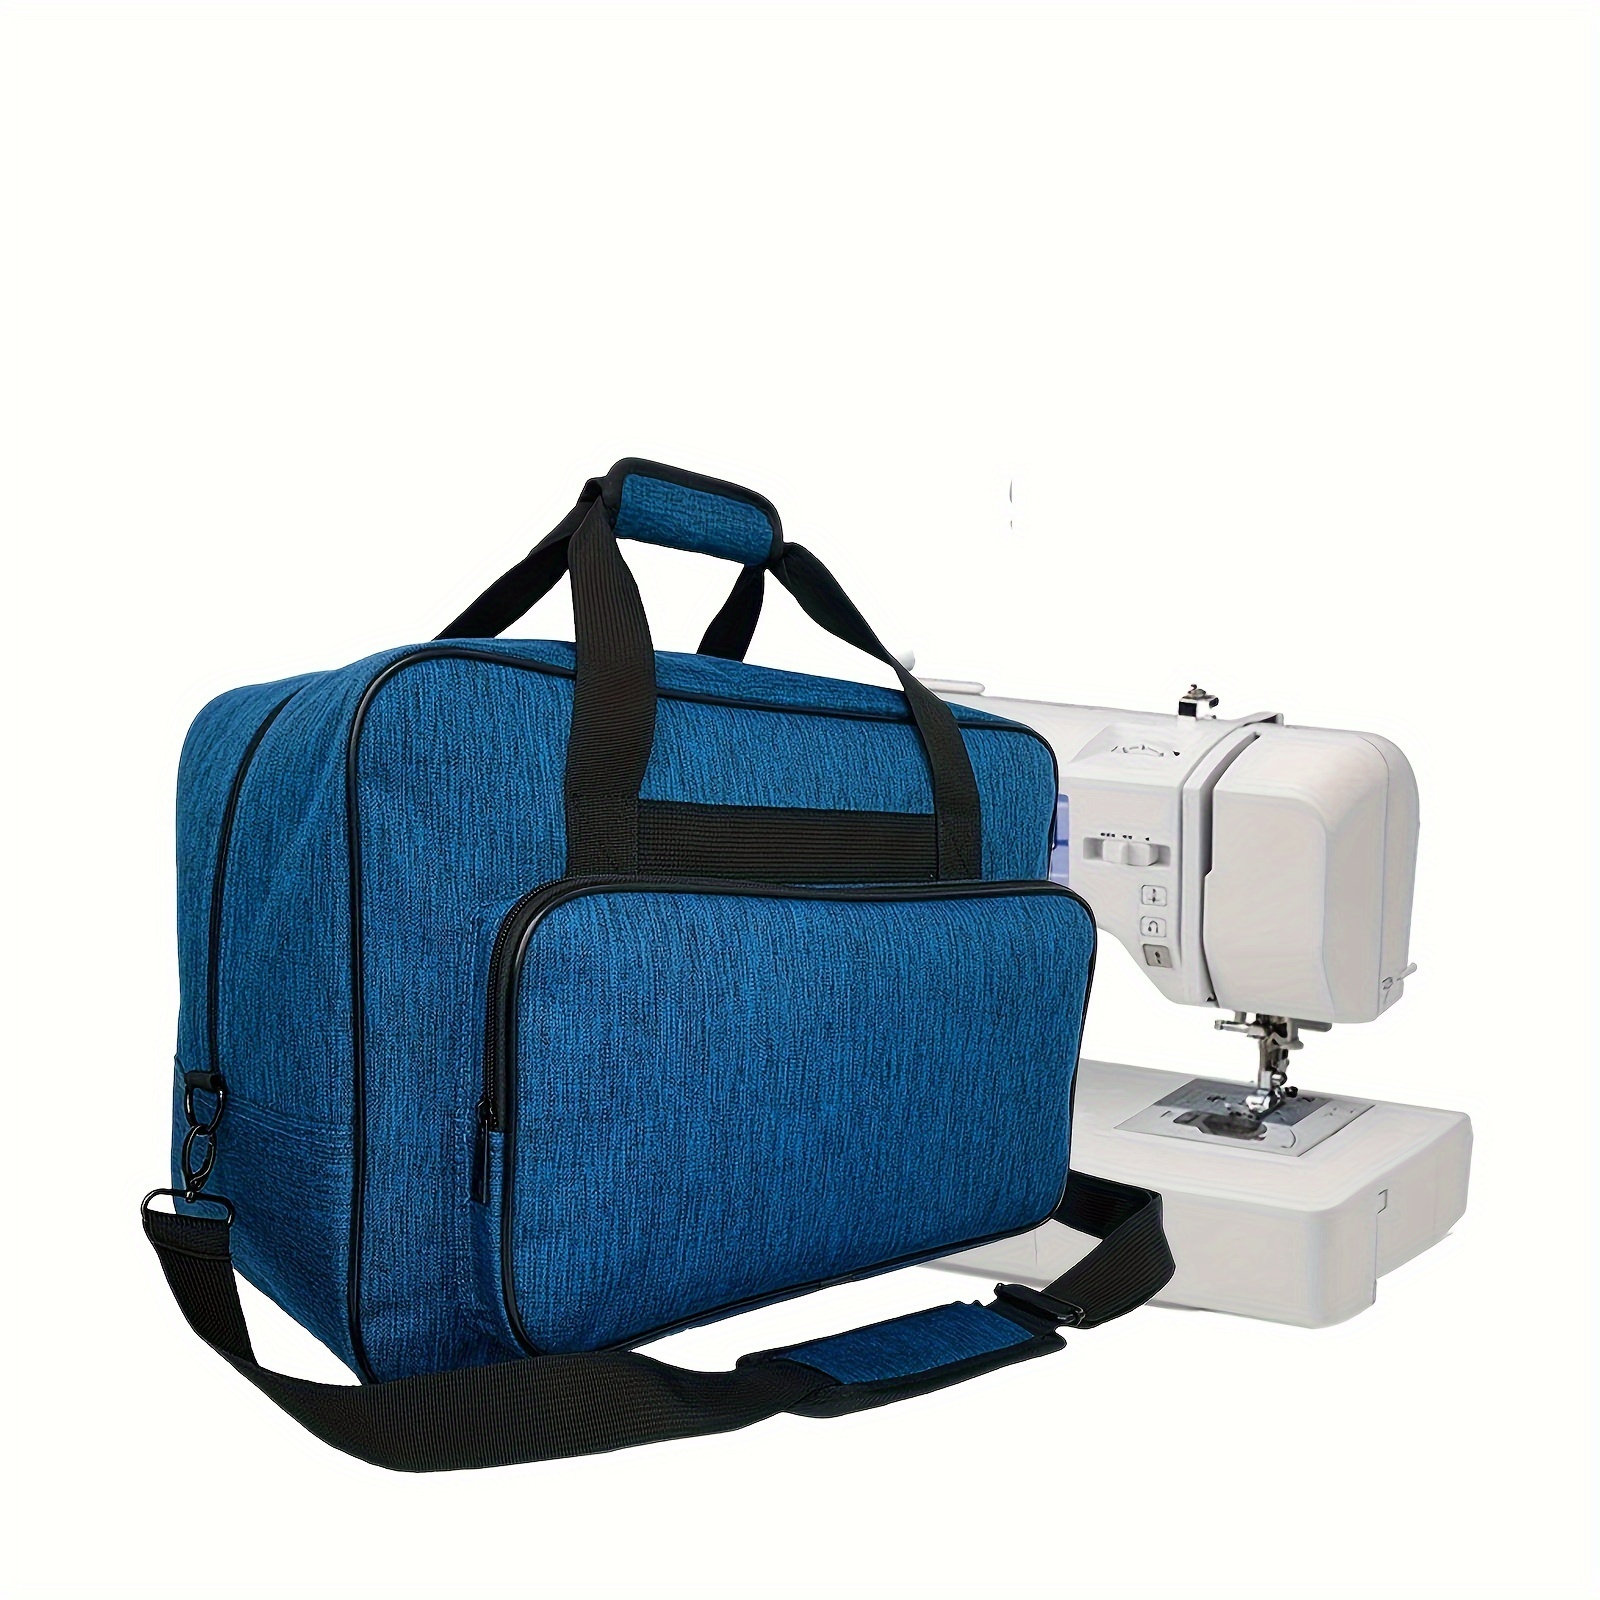 Bolsa de transporte para máquina de coser, bolsa universal portátil  compatible con la mayoría de máquinas de coser Singer, Brother